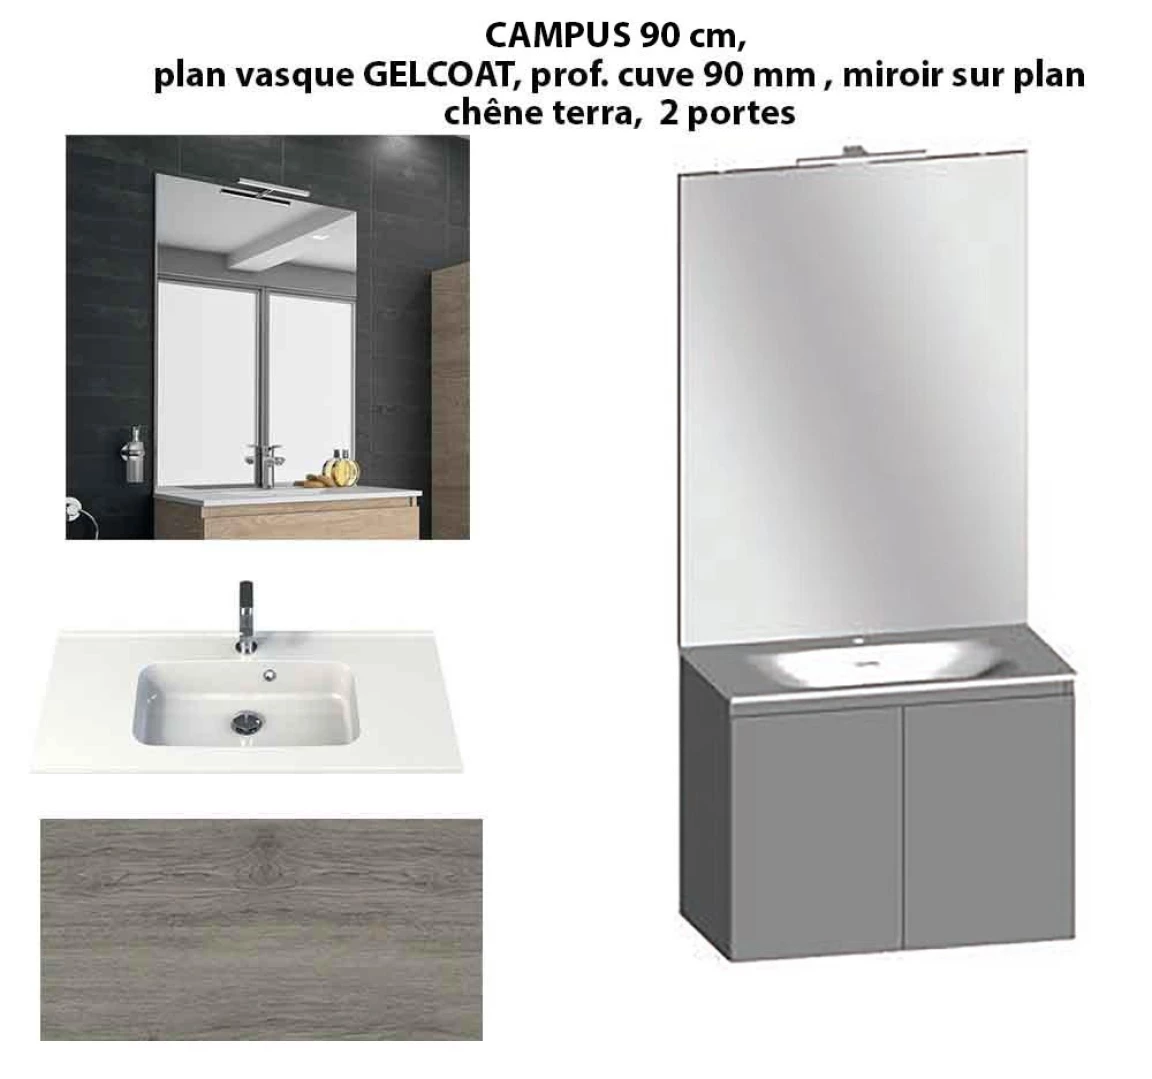 Ensemble meuble de salle de bain CAMPUS 90 cm, plan vasque GELCOAT, prof. cuve 90 mm, miroir sur plan, chêne terra, 2 portes